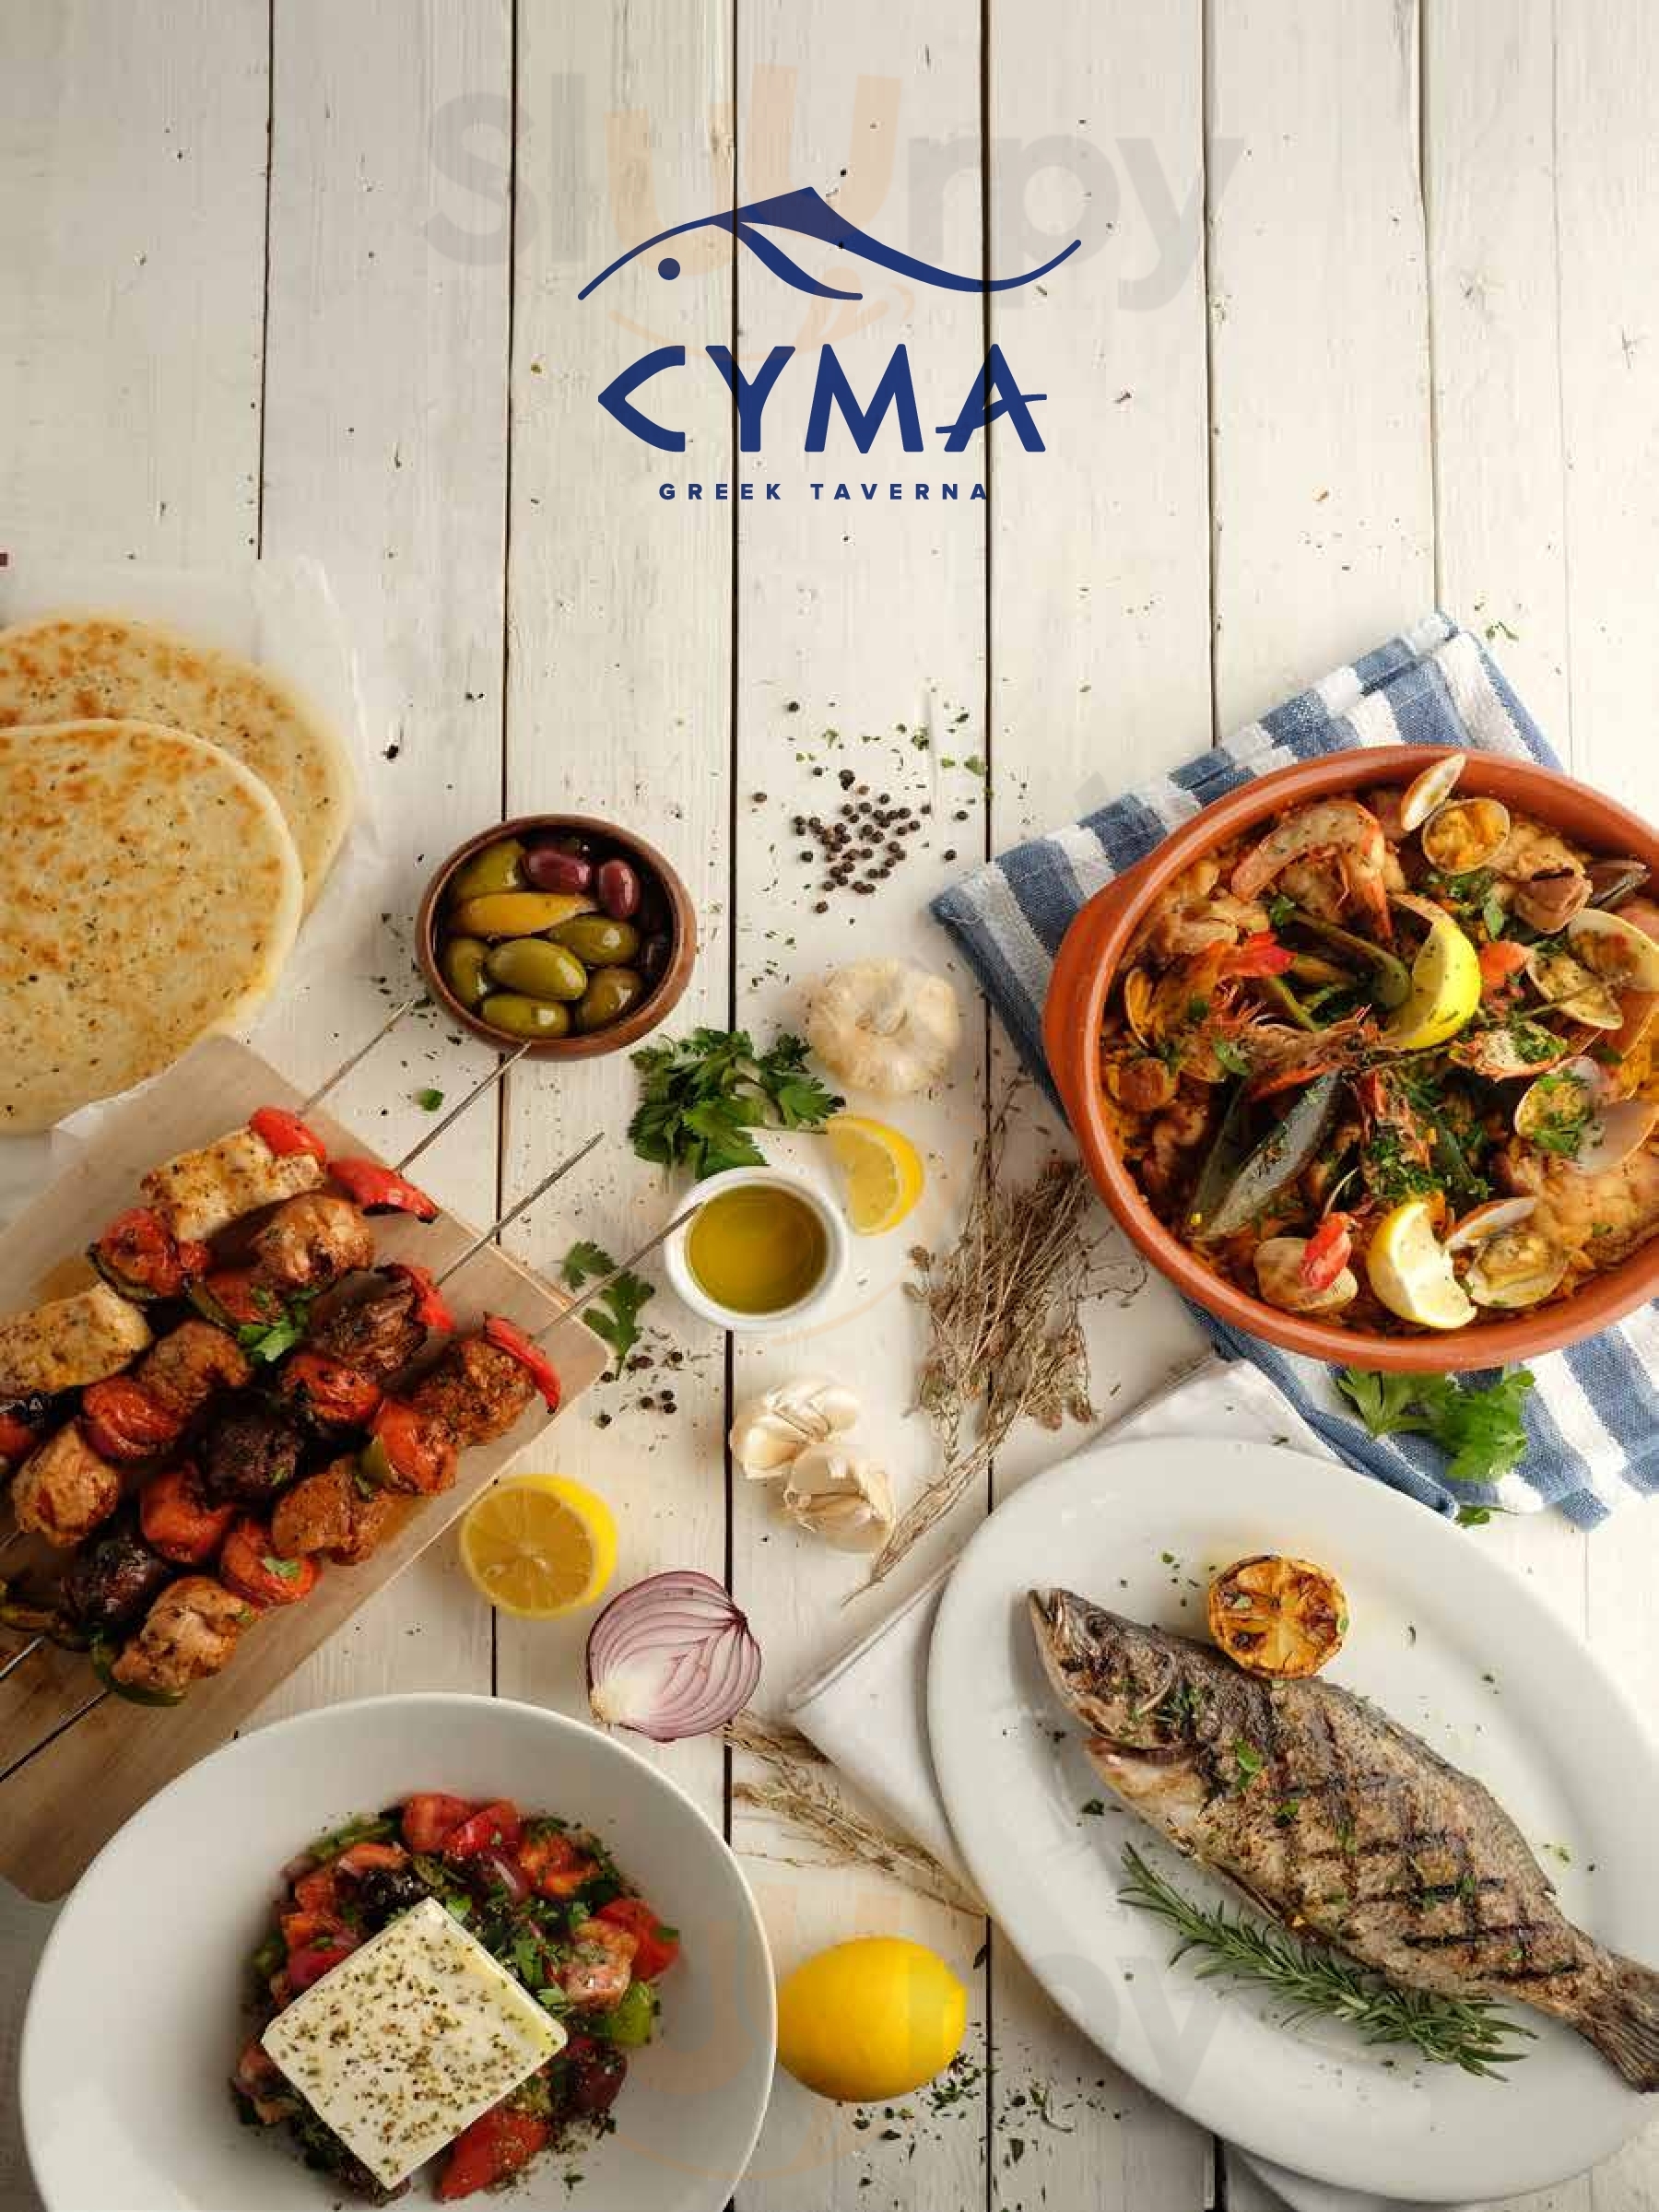 Cyma Greek Taverna Quezon City Menu - 1